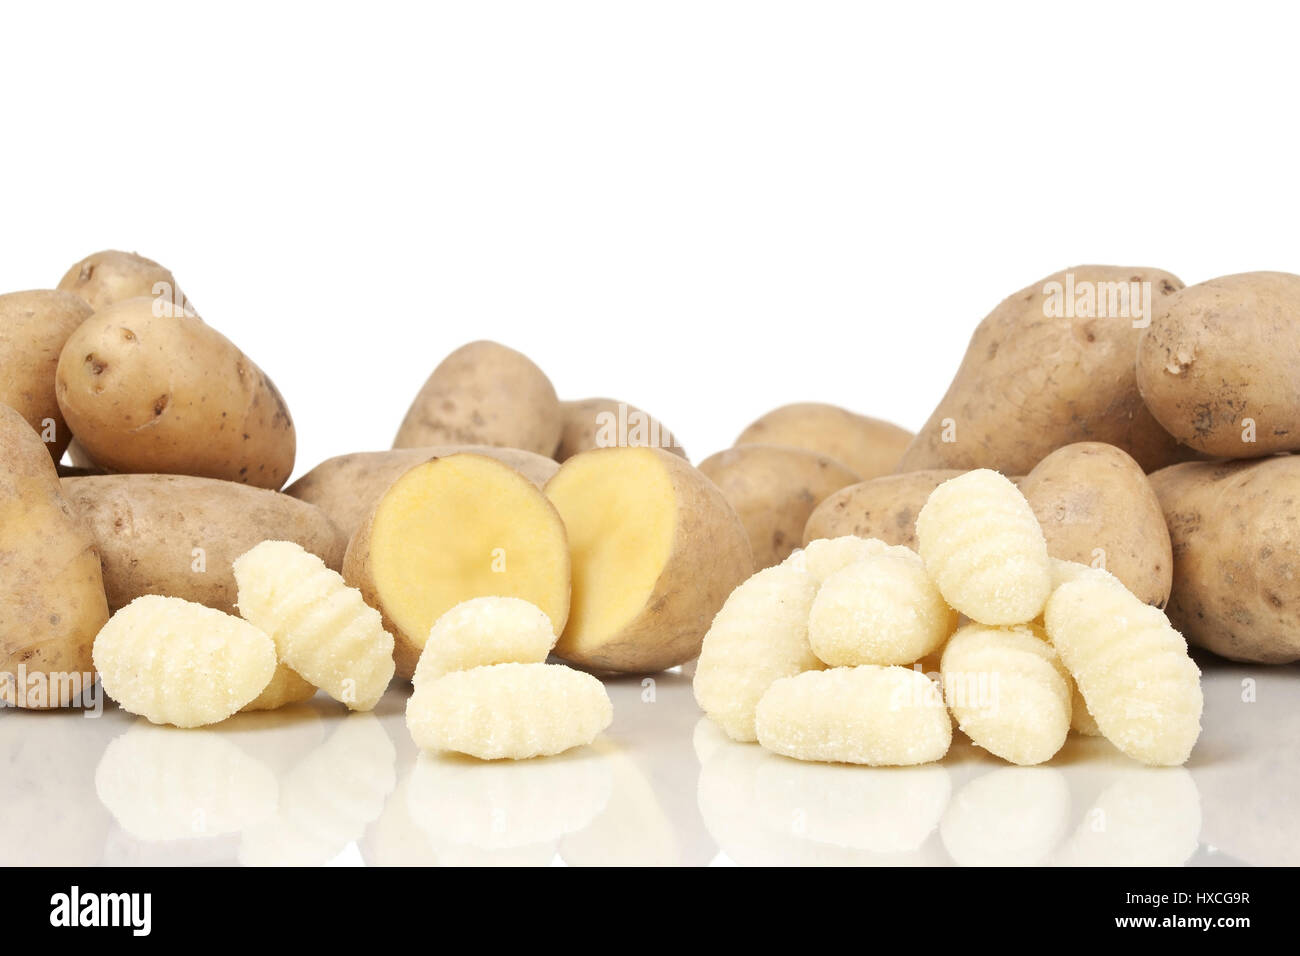 Potatoes and Gnocchi, Potatoes and Gnocchi |, Kartoffeln und Gnocchi |Potatoes and Gnocchi| Stock Photo